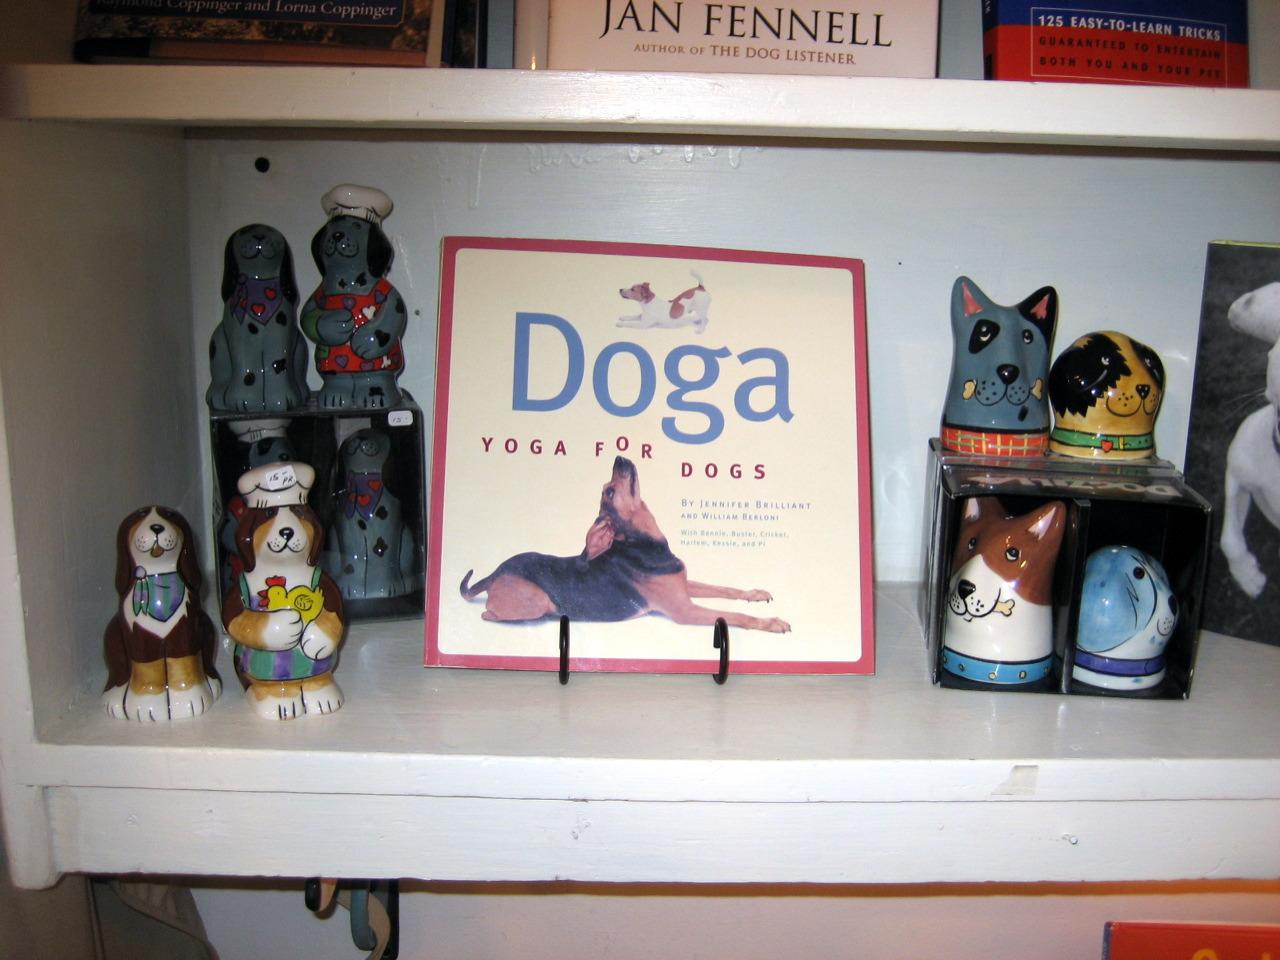 Le doga, une pratique qui a du chien